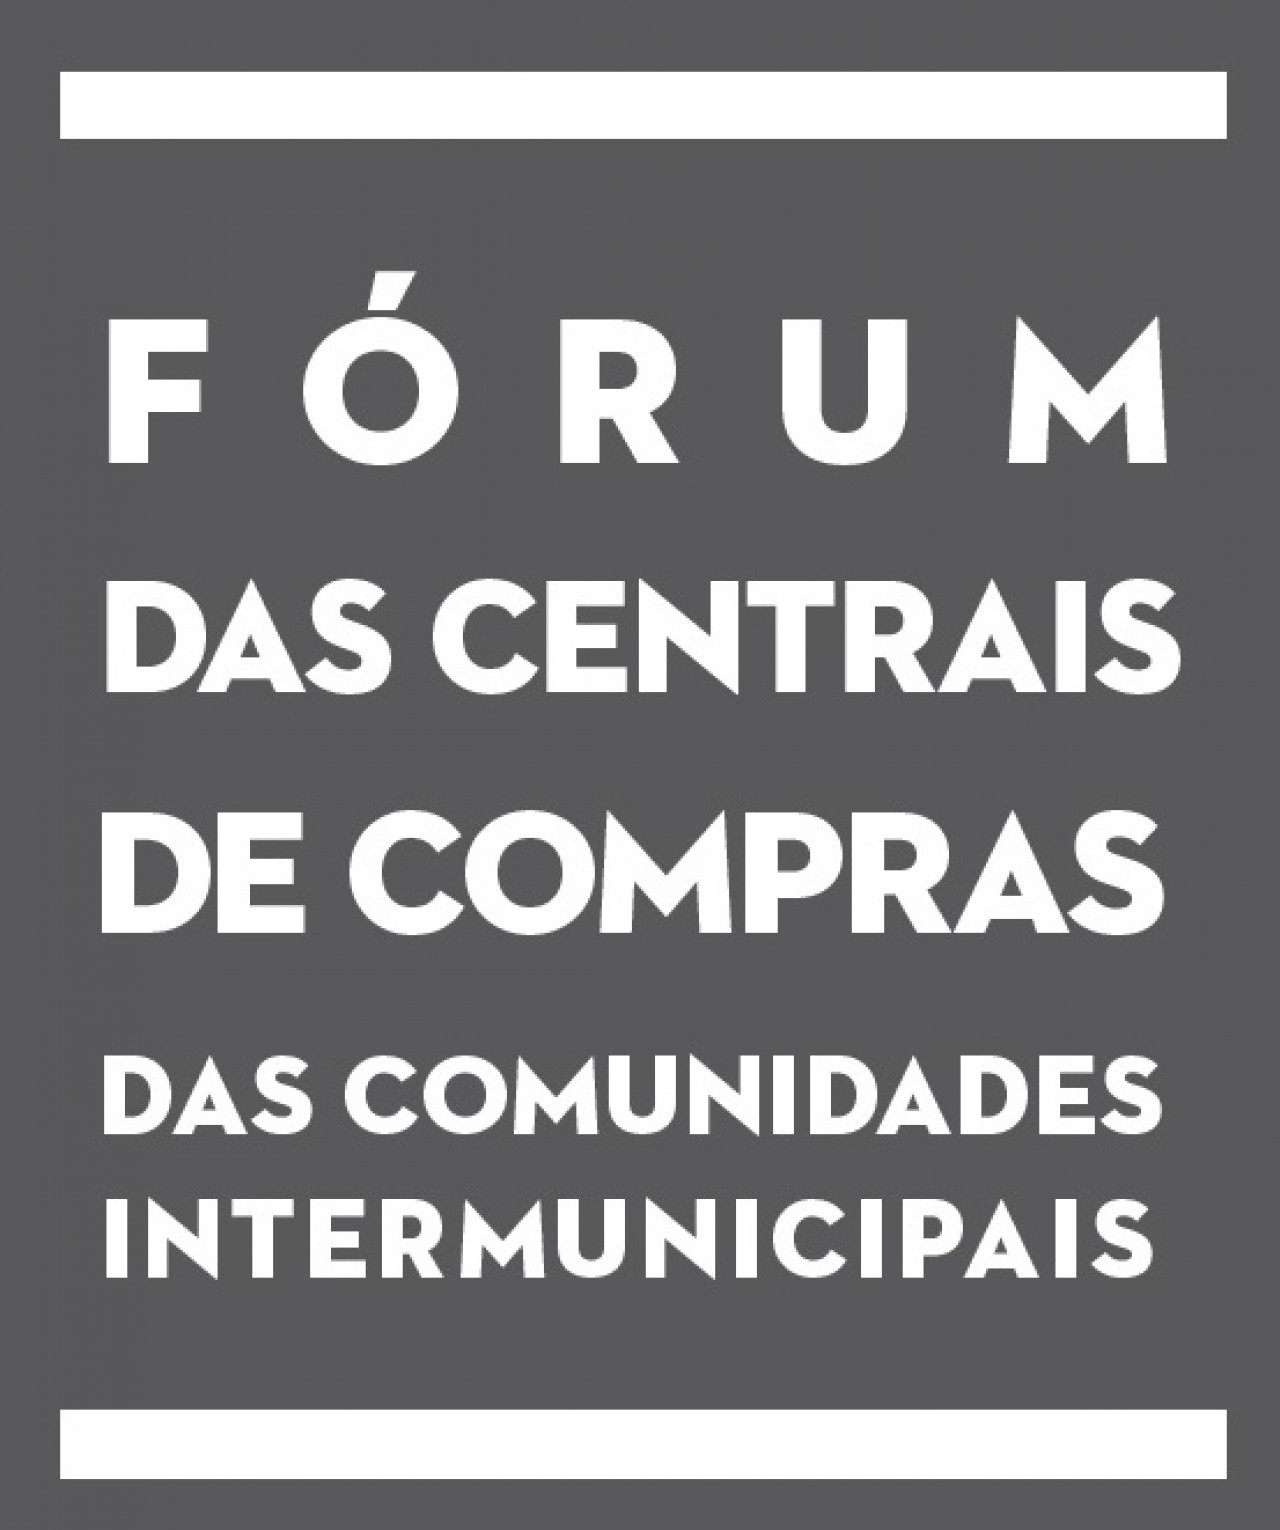 Fórum das Centrais de Compras Intermunicipais